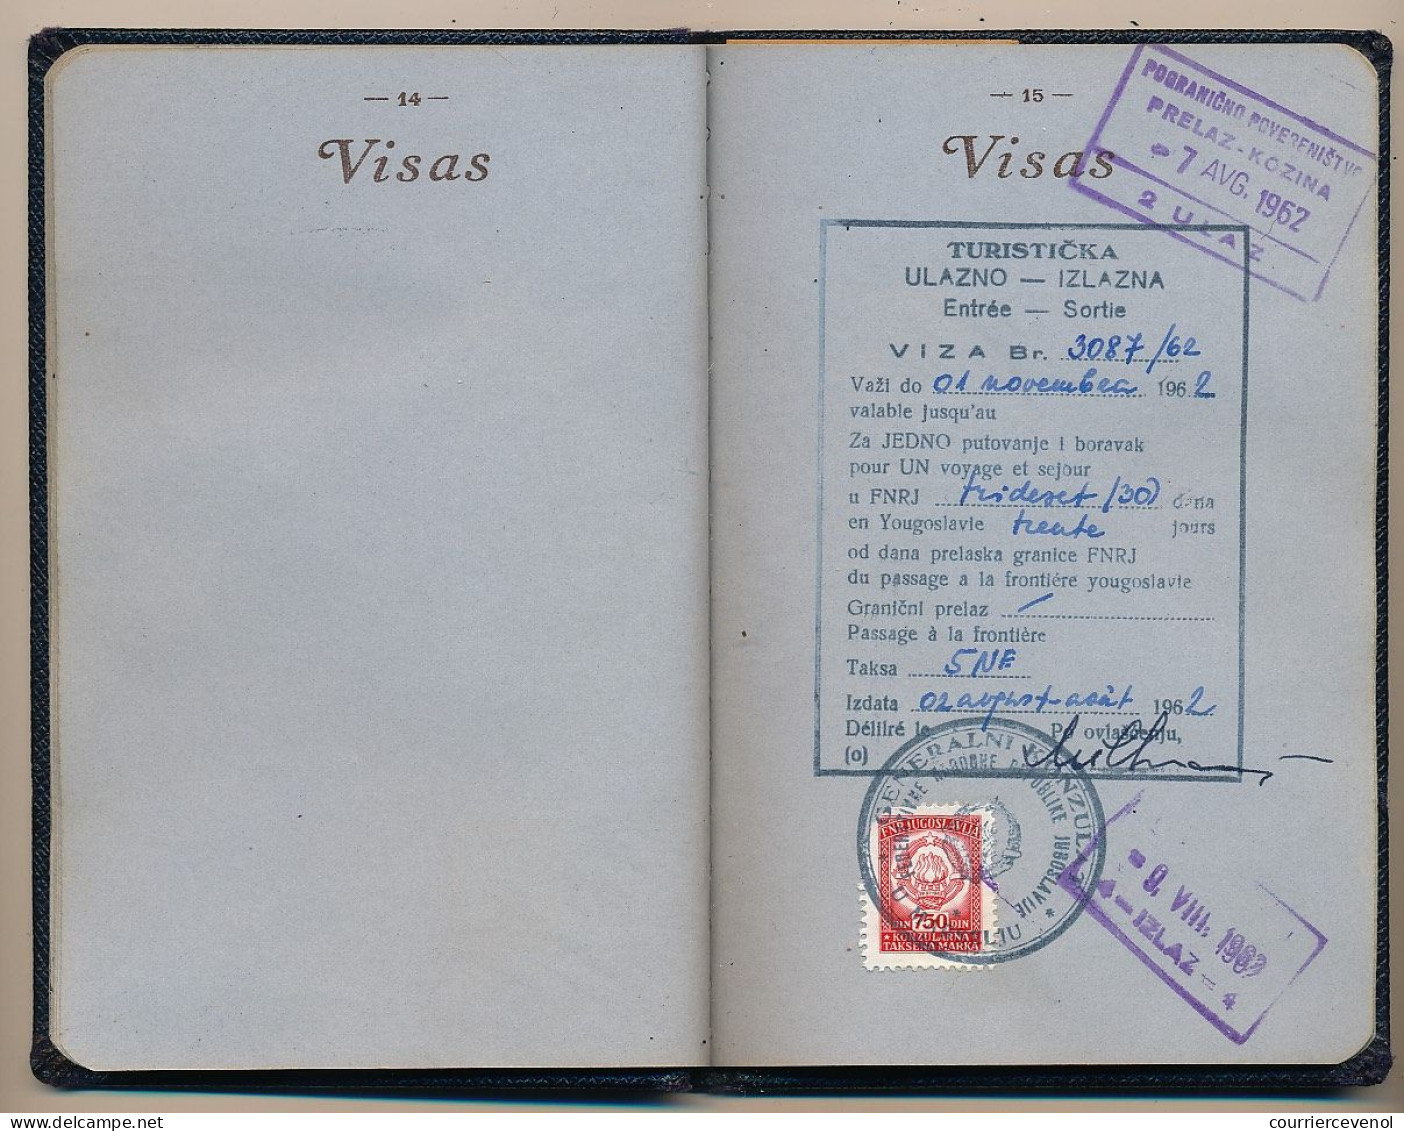 FRANCE - Passeport délivré à Marseille (B. du R.) - 1959/1965 - Fiscaux type Daussy 2000F, 300F,100F + 32,00NF + Visas